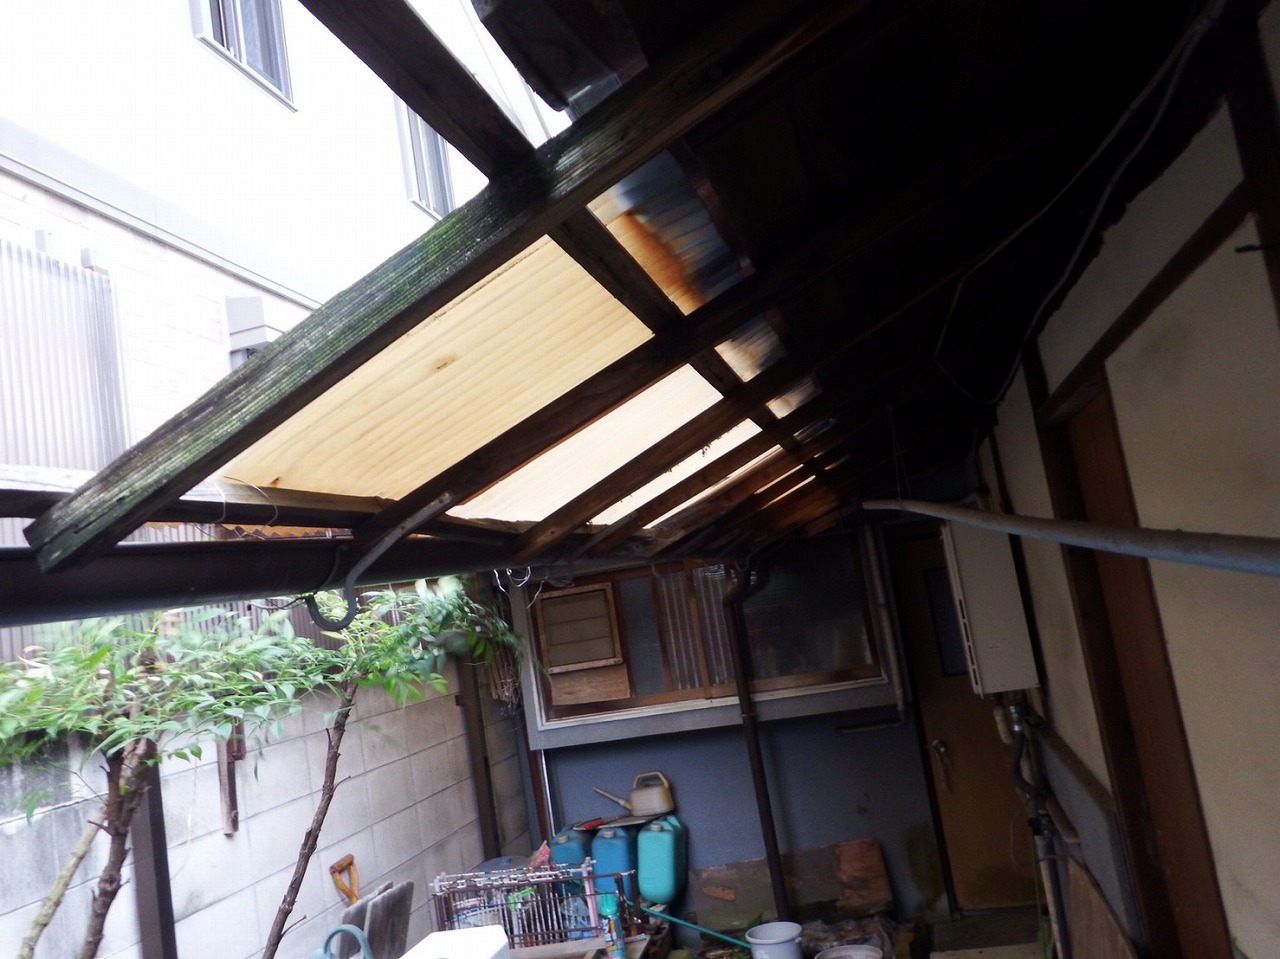 奈良市川久保町で空き家の屋根の割れた波板